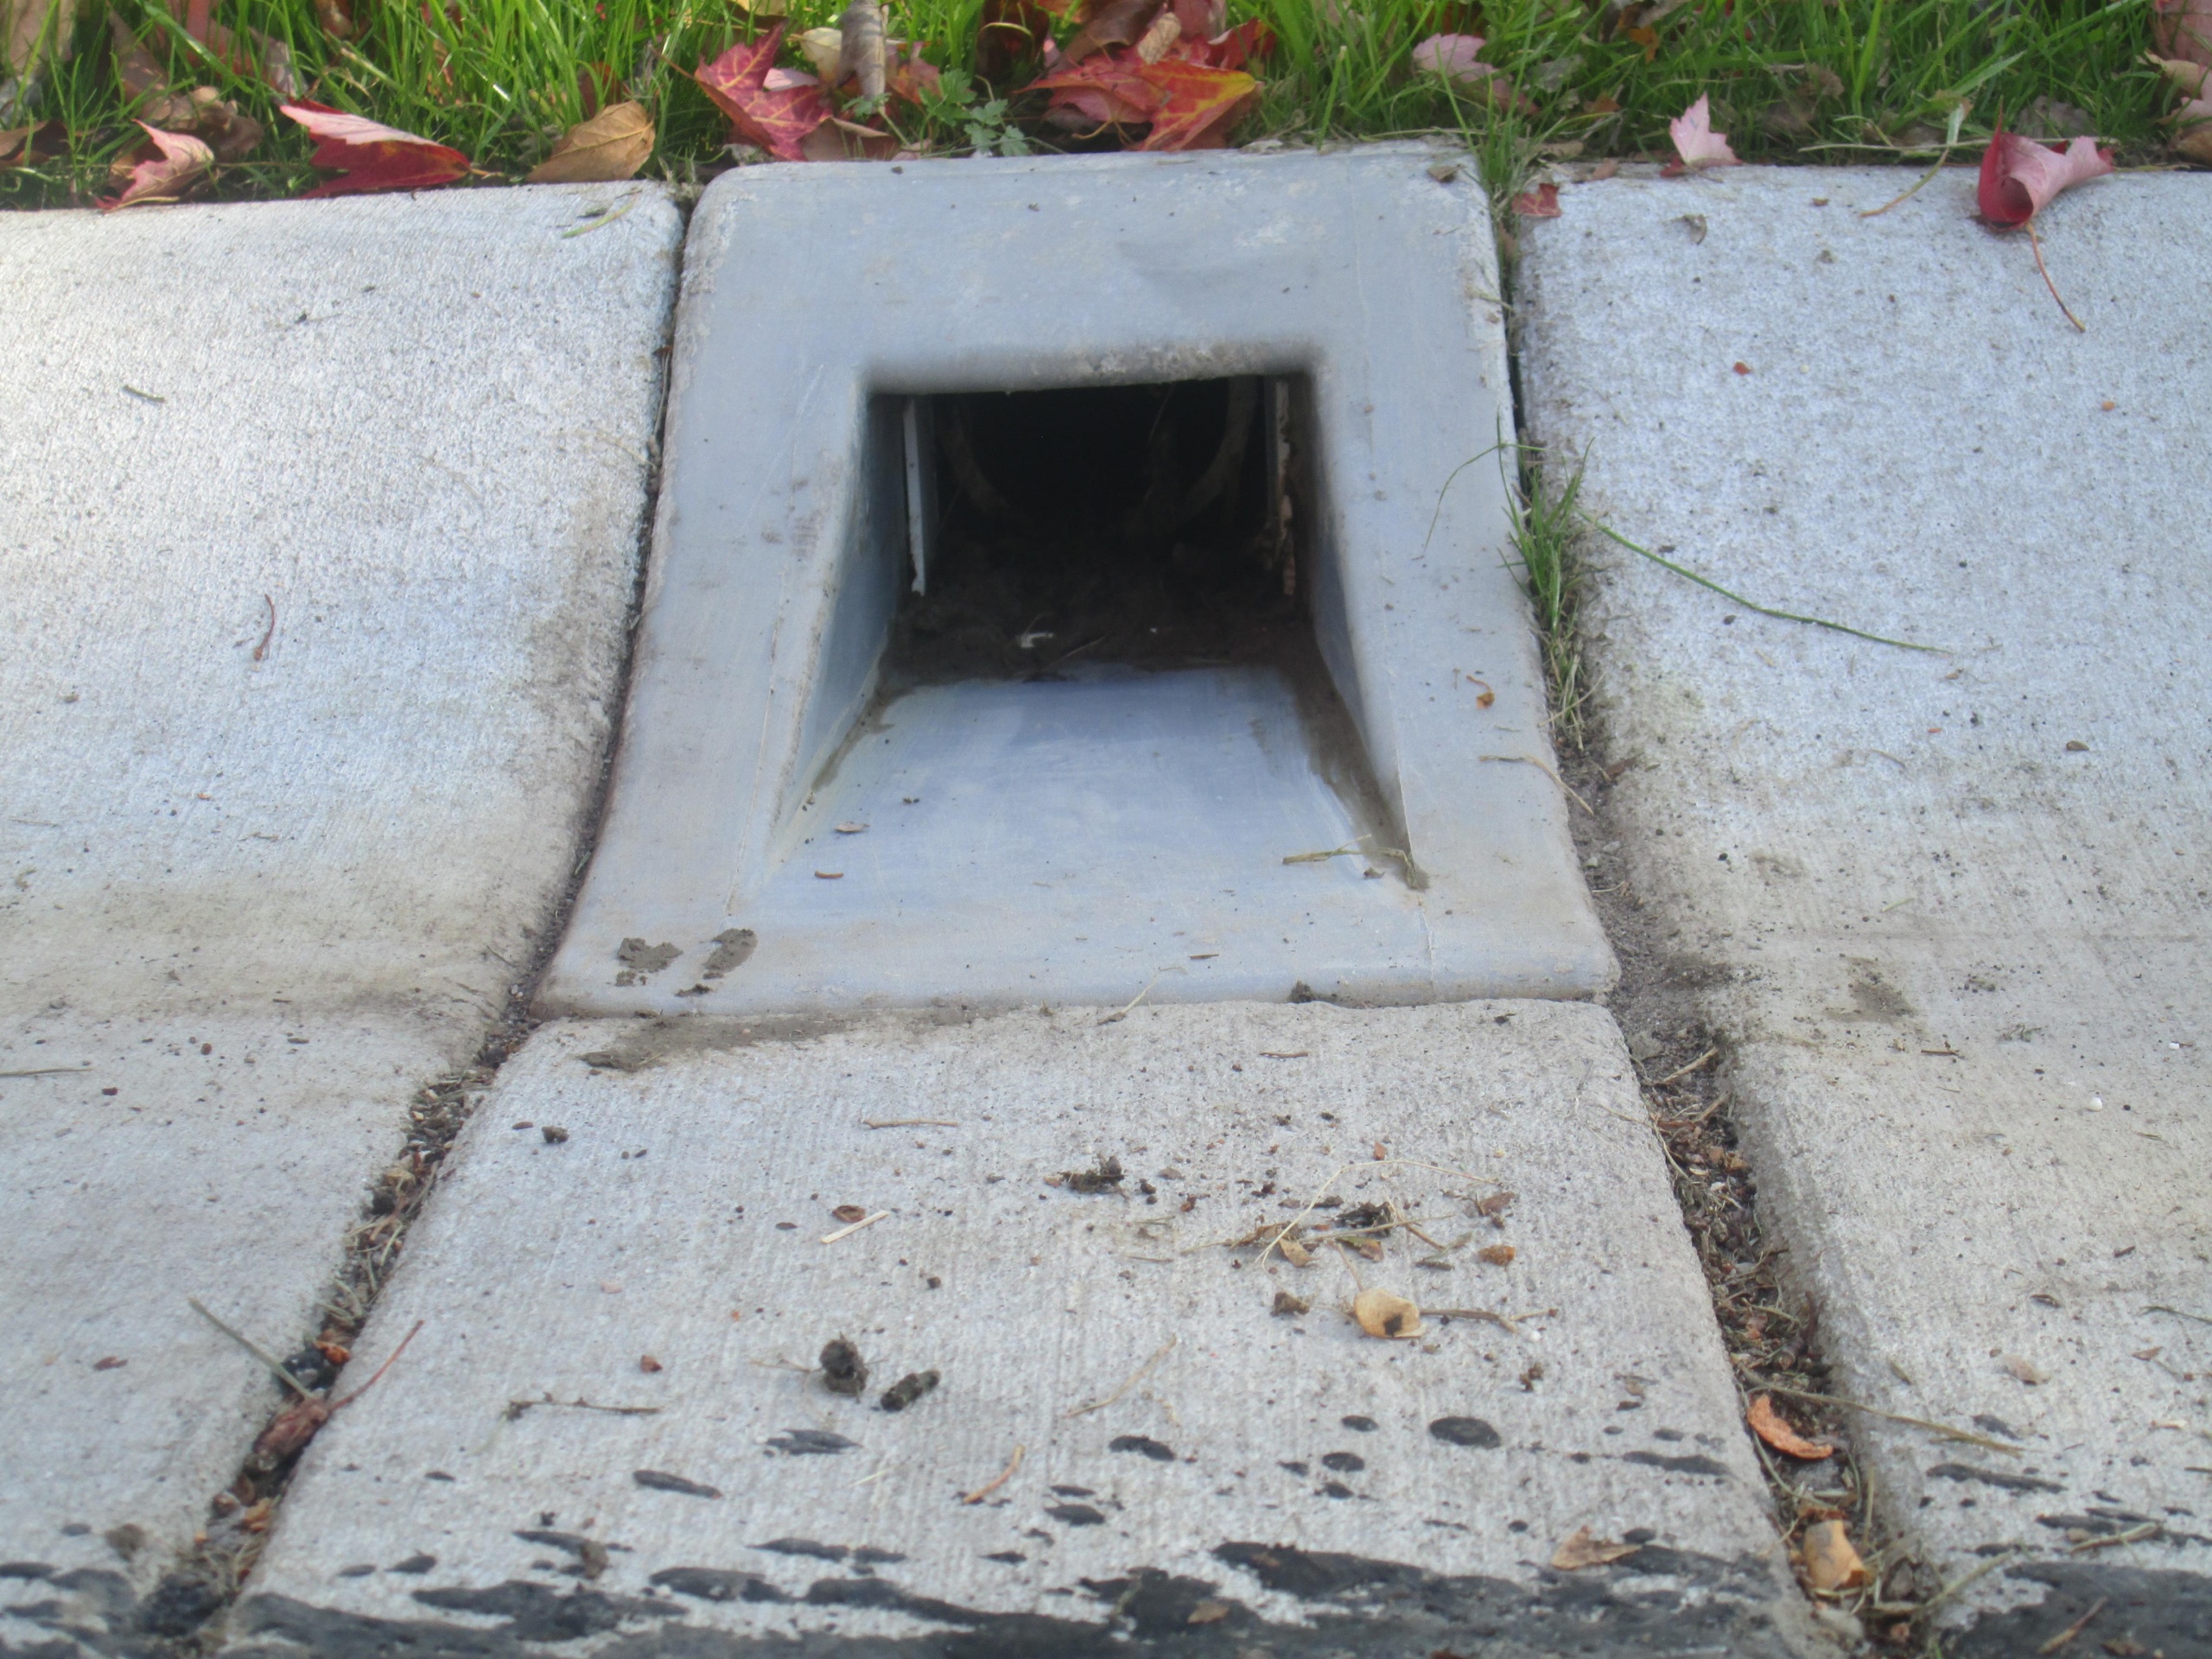 installed curb drain